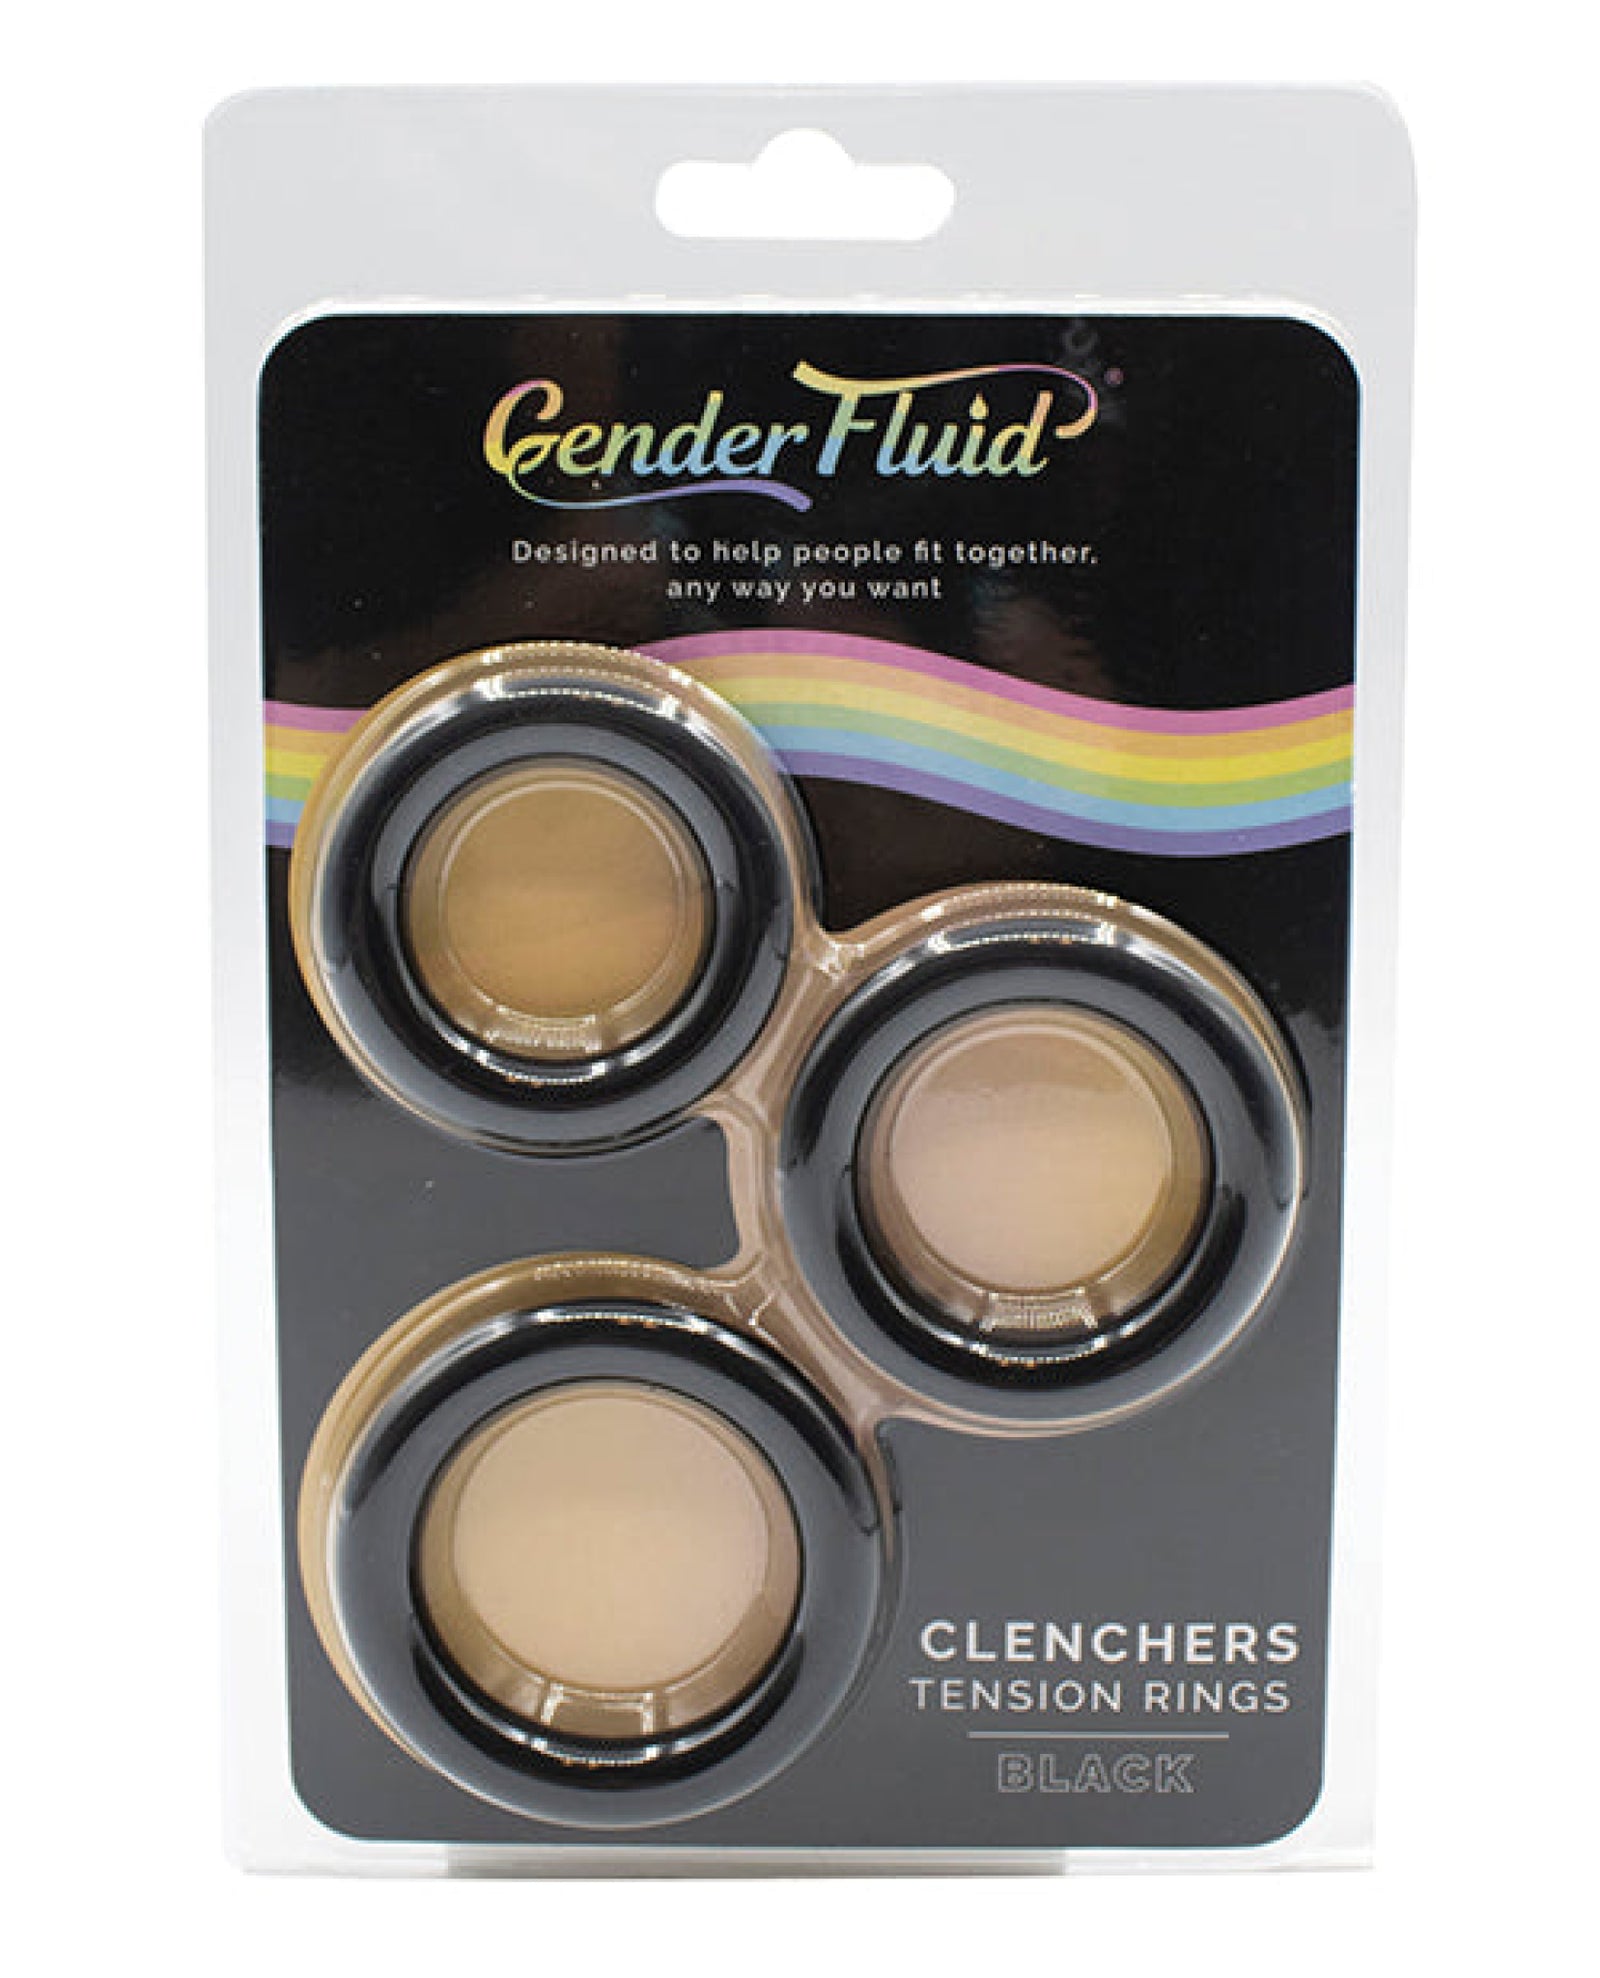 Gender Fluid Clenchers Tension Ring Set - Black Gender Fluid